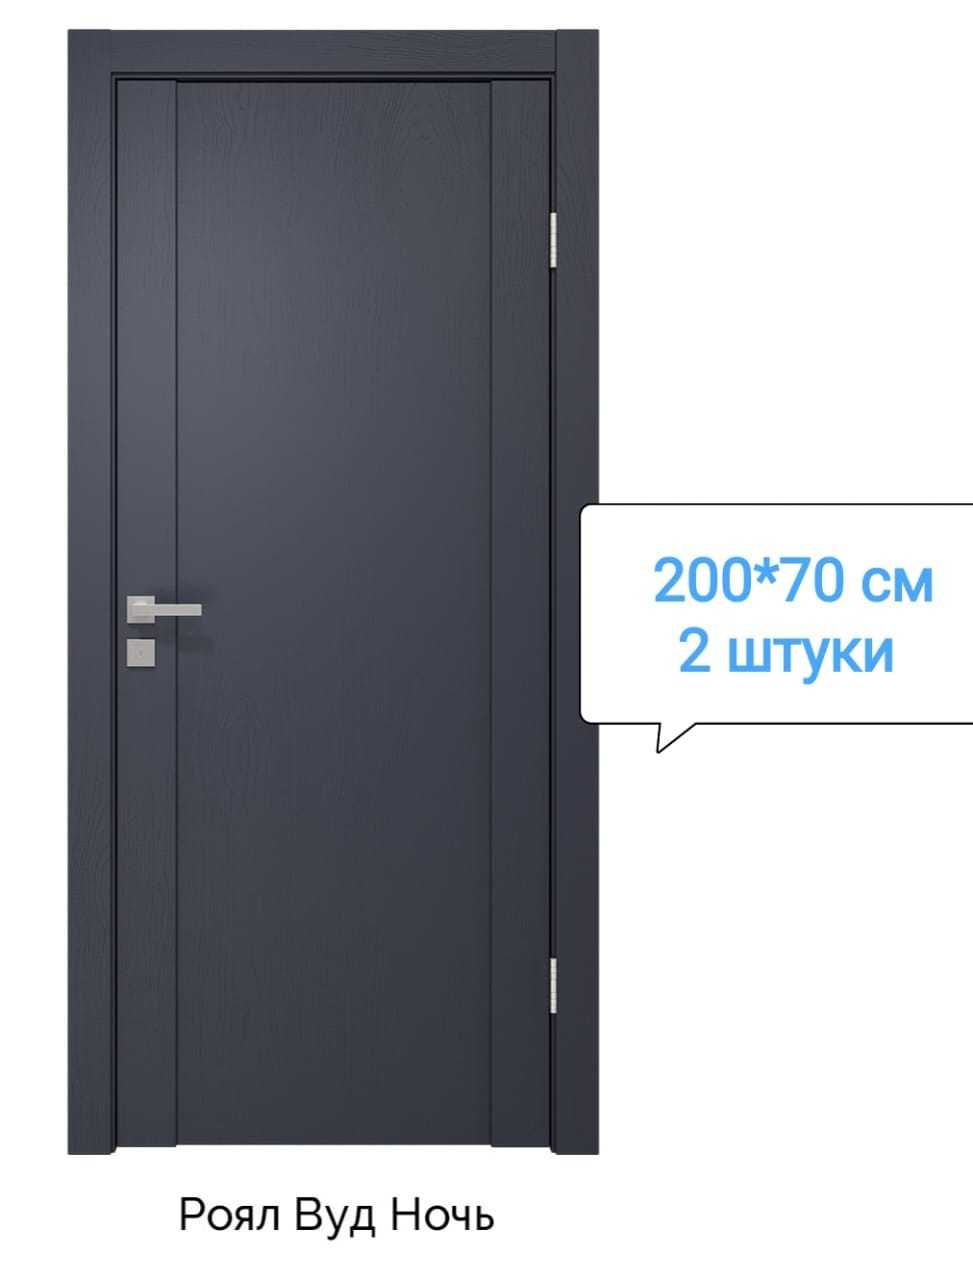 НОВЫЕ межкомнатные двери комплектами - РАСПРОДАЖА (Дерево) 
20 000 ₸